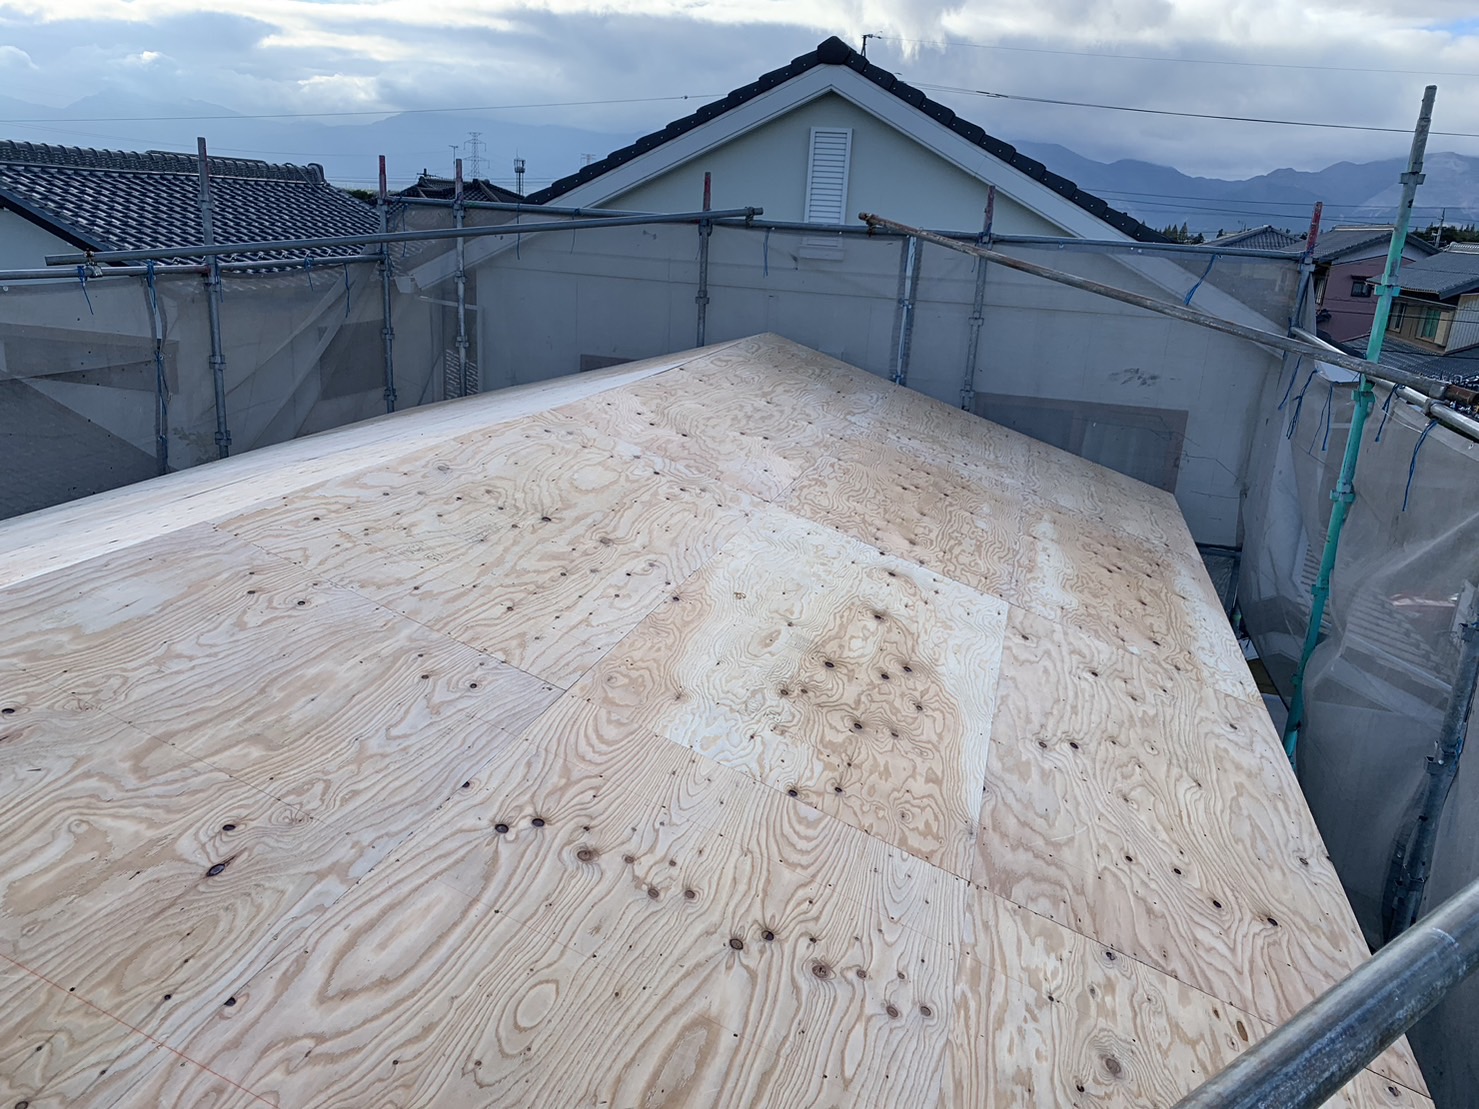 東員町二階屋根の葺き替え、屋根修理野地板の敷設状況